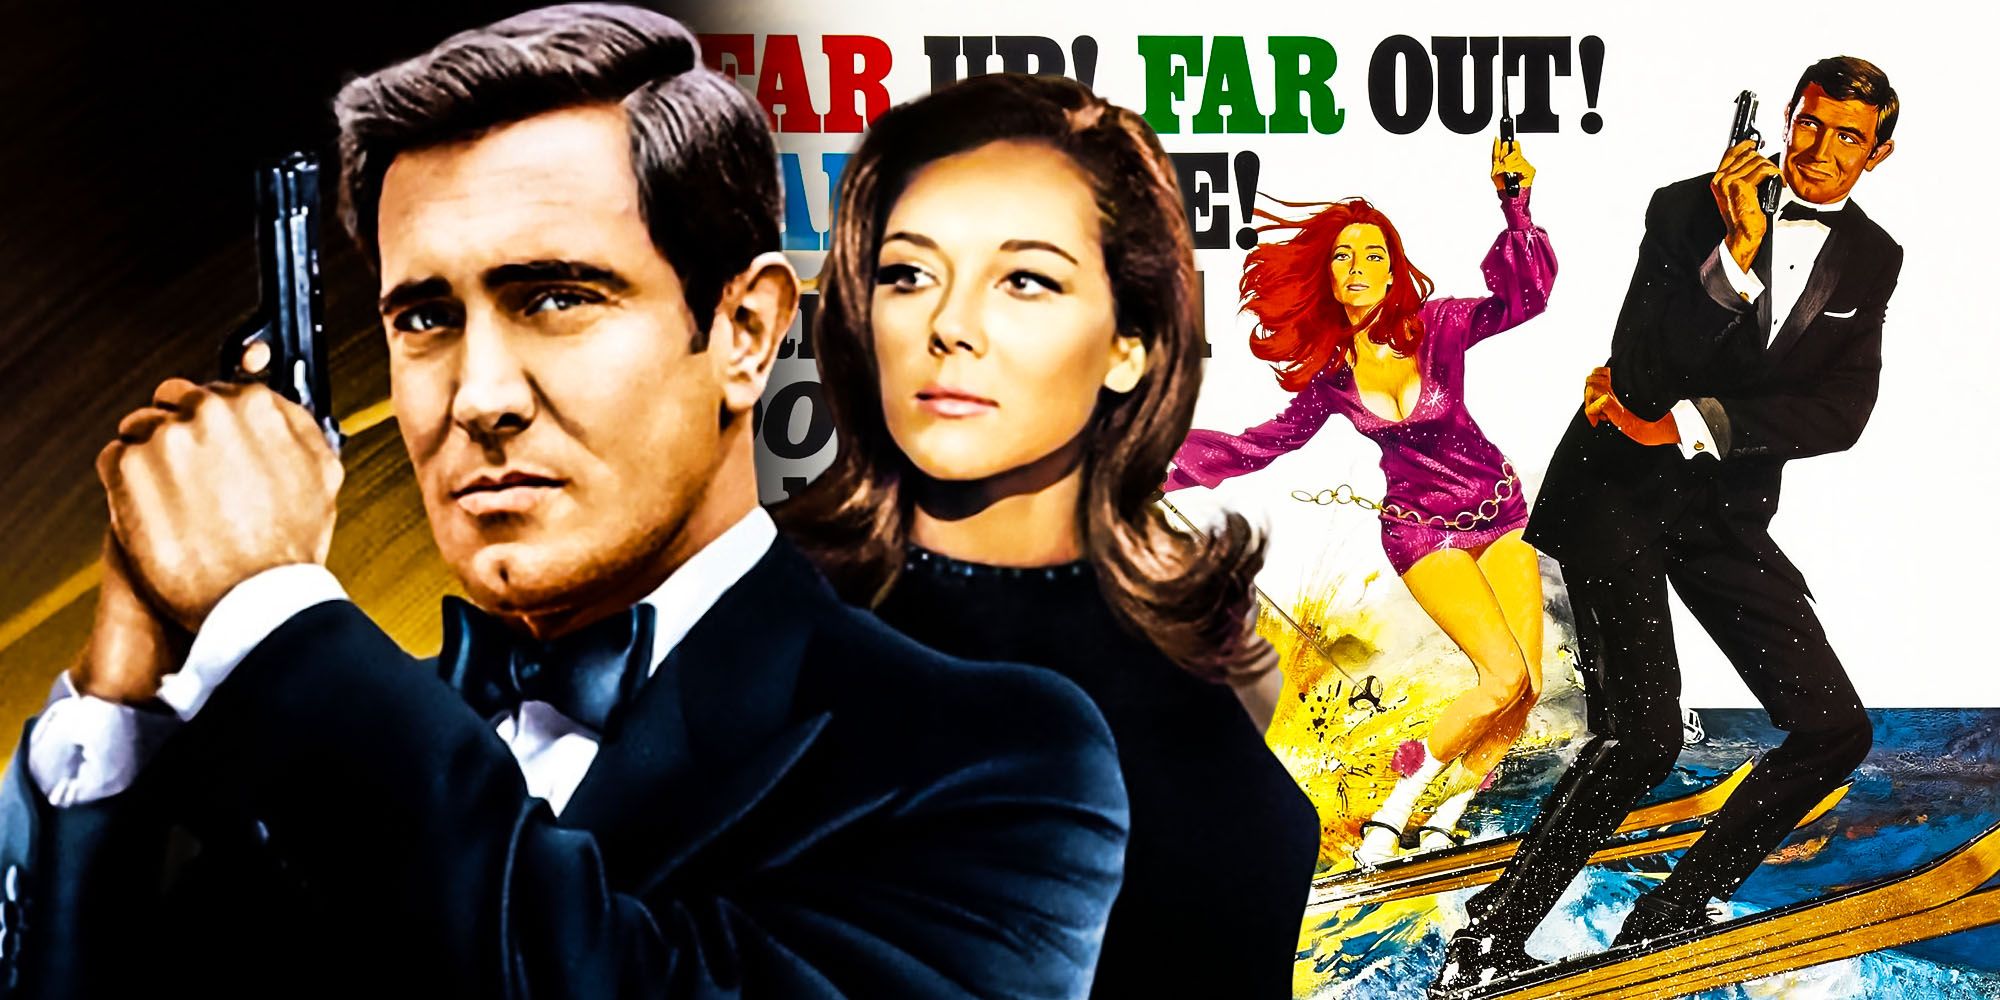 no serviço secreto de sua majestade, o filme favorito dos fãs do 007